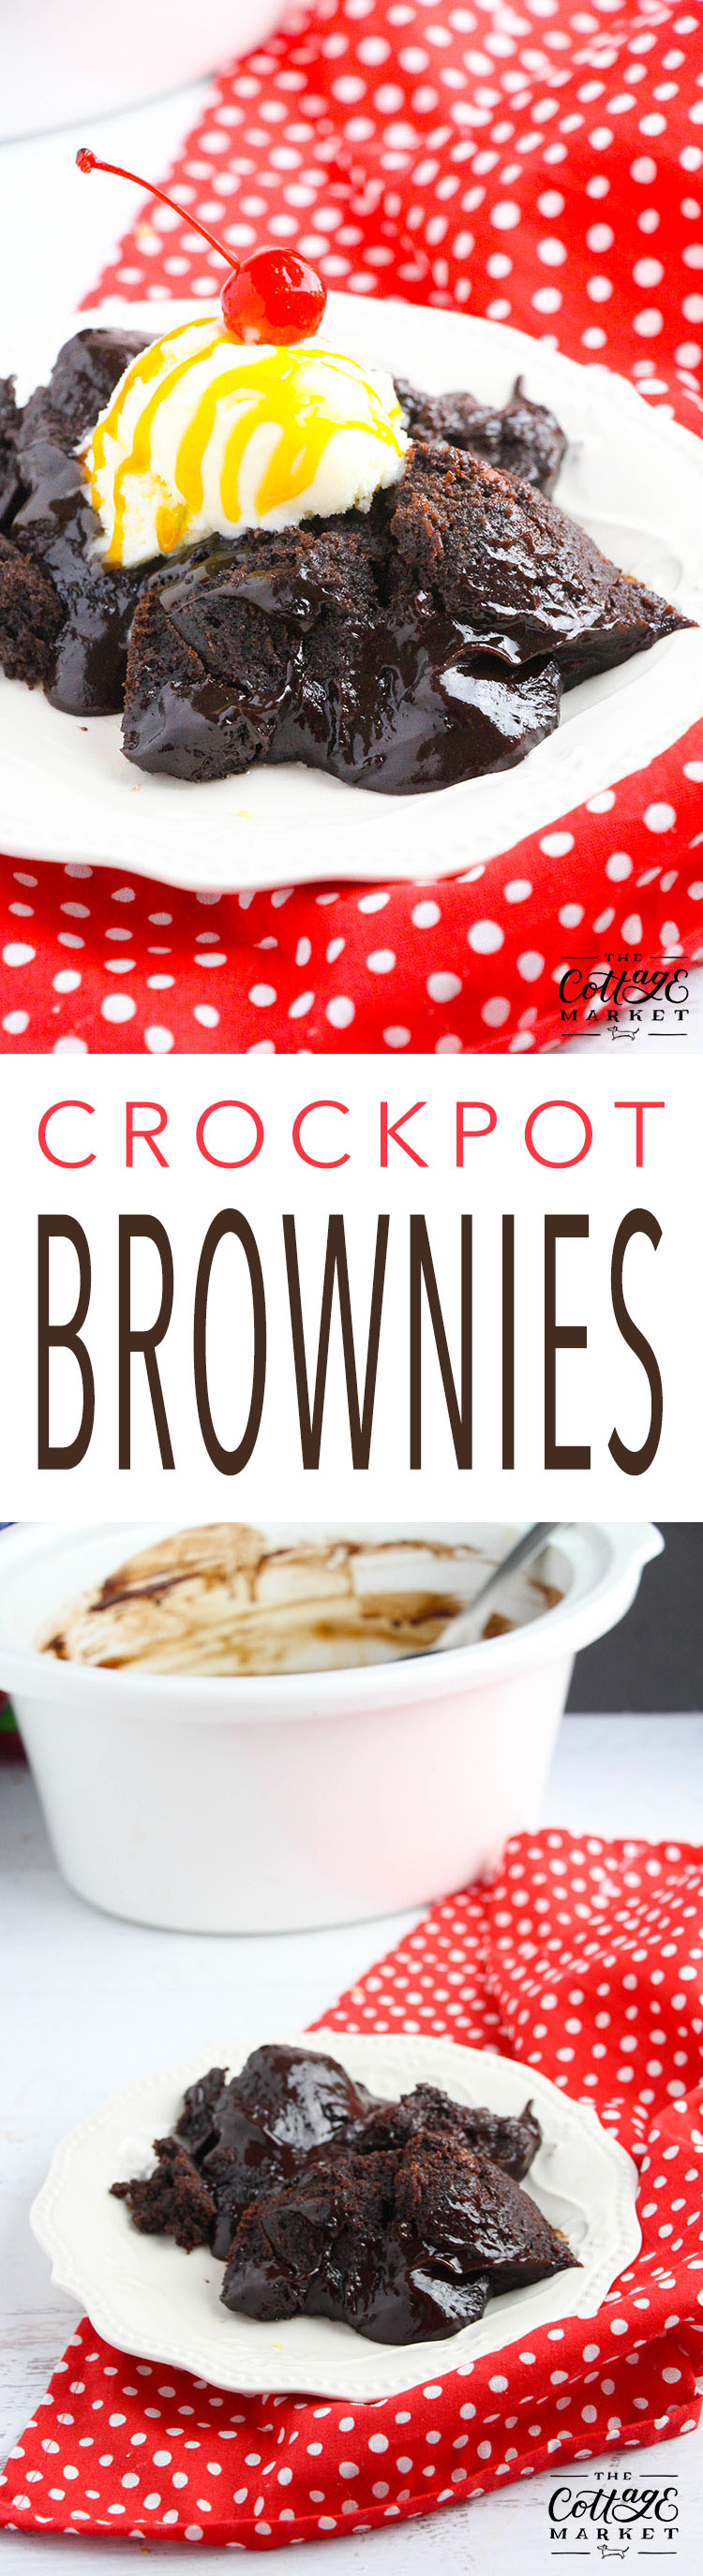 http://thecottagemarket.com/wp-content/uploads/2017/06/crockpot-brownies-TOWER-1.jpg